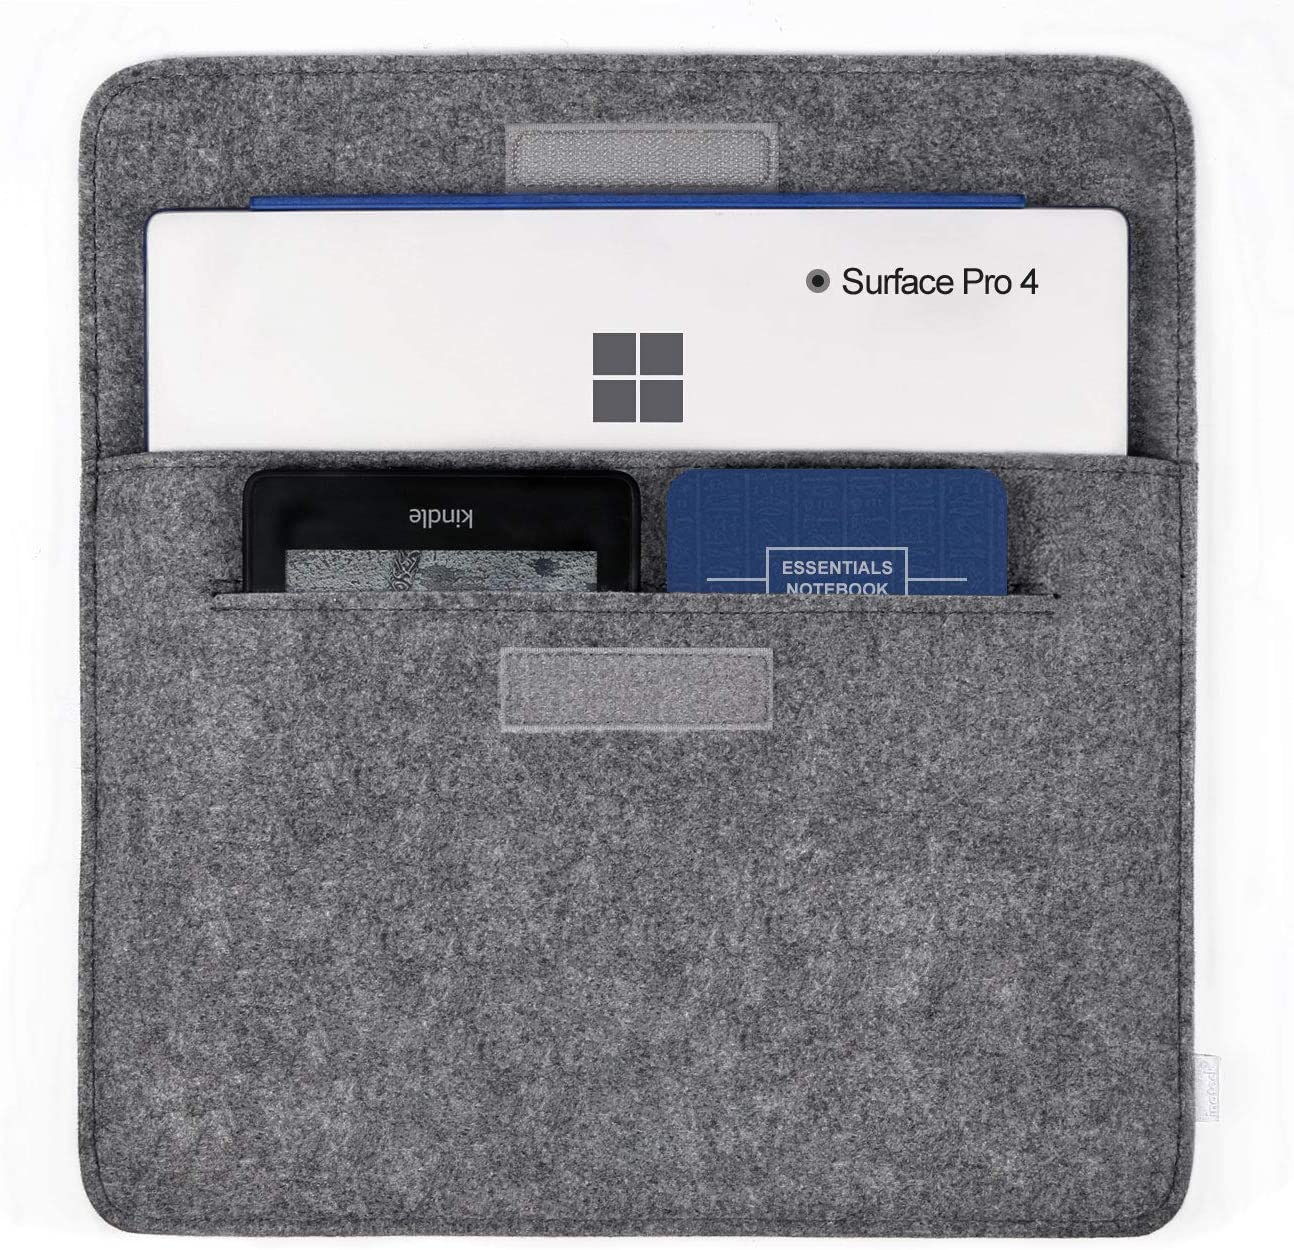 11.6-12インチ MacBook ラップトップスリーブ MP1200，dark gray - Inateckバックパックジャパン